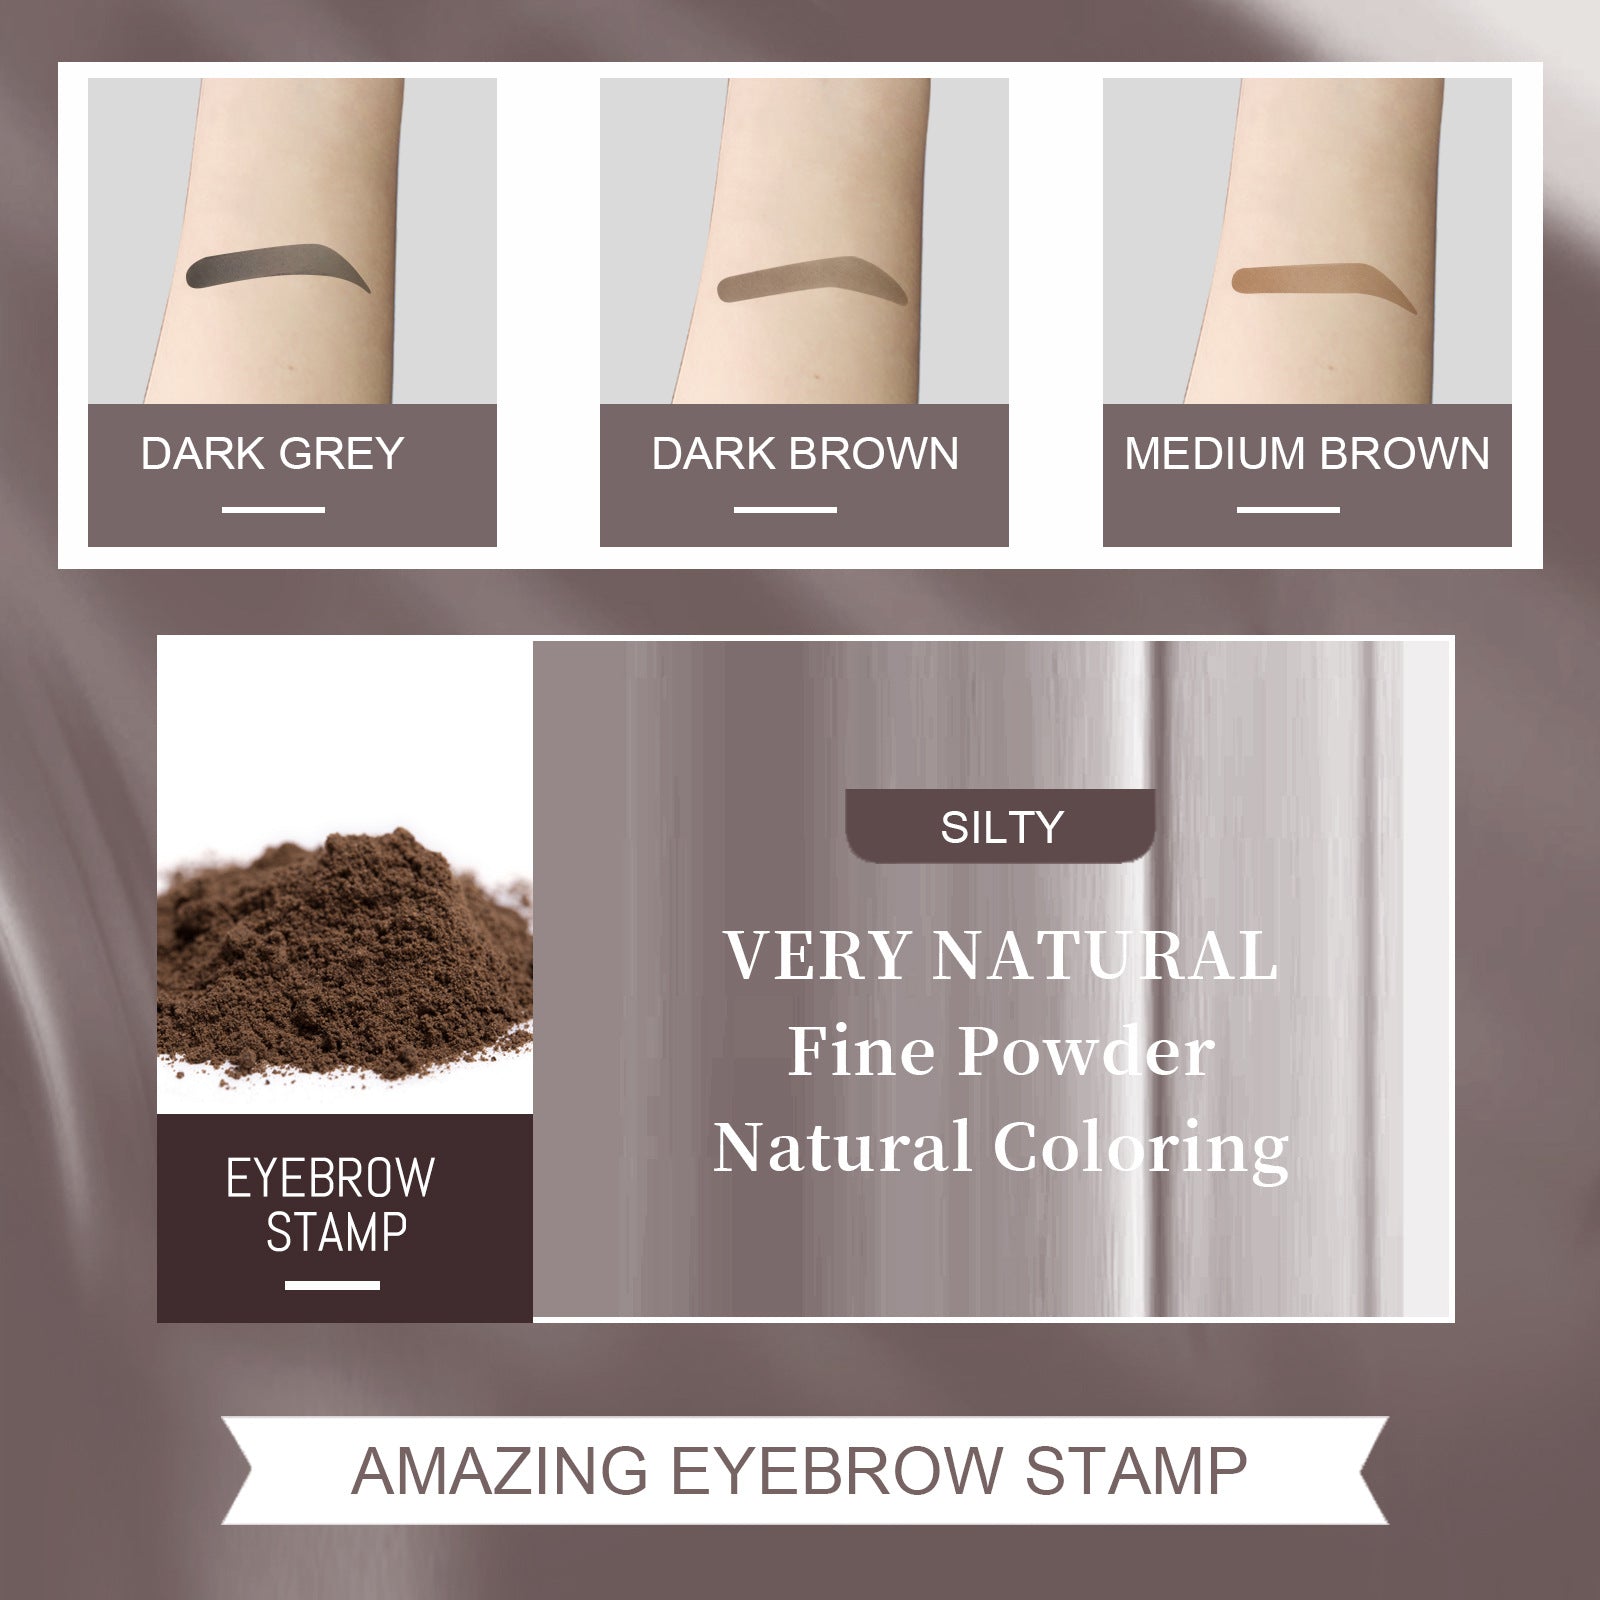 EELHOE Eyebrow Stamp Set Makeup Eyebrow Powder